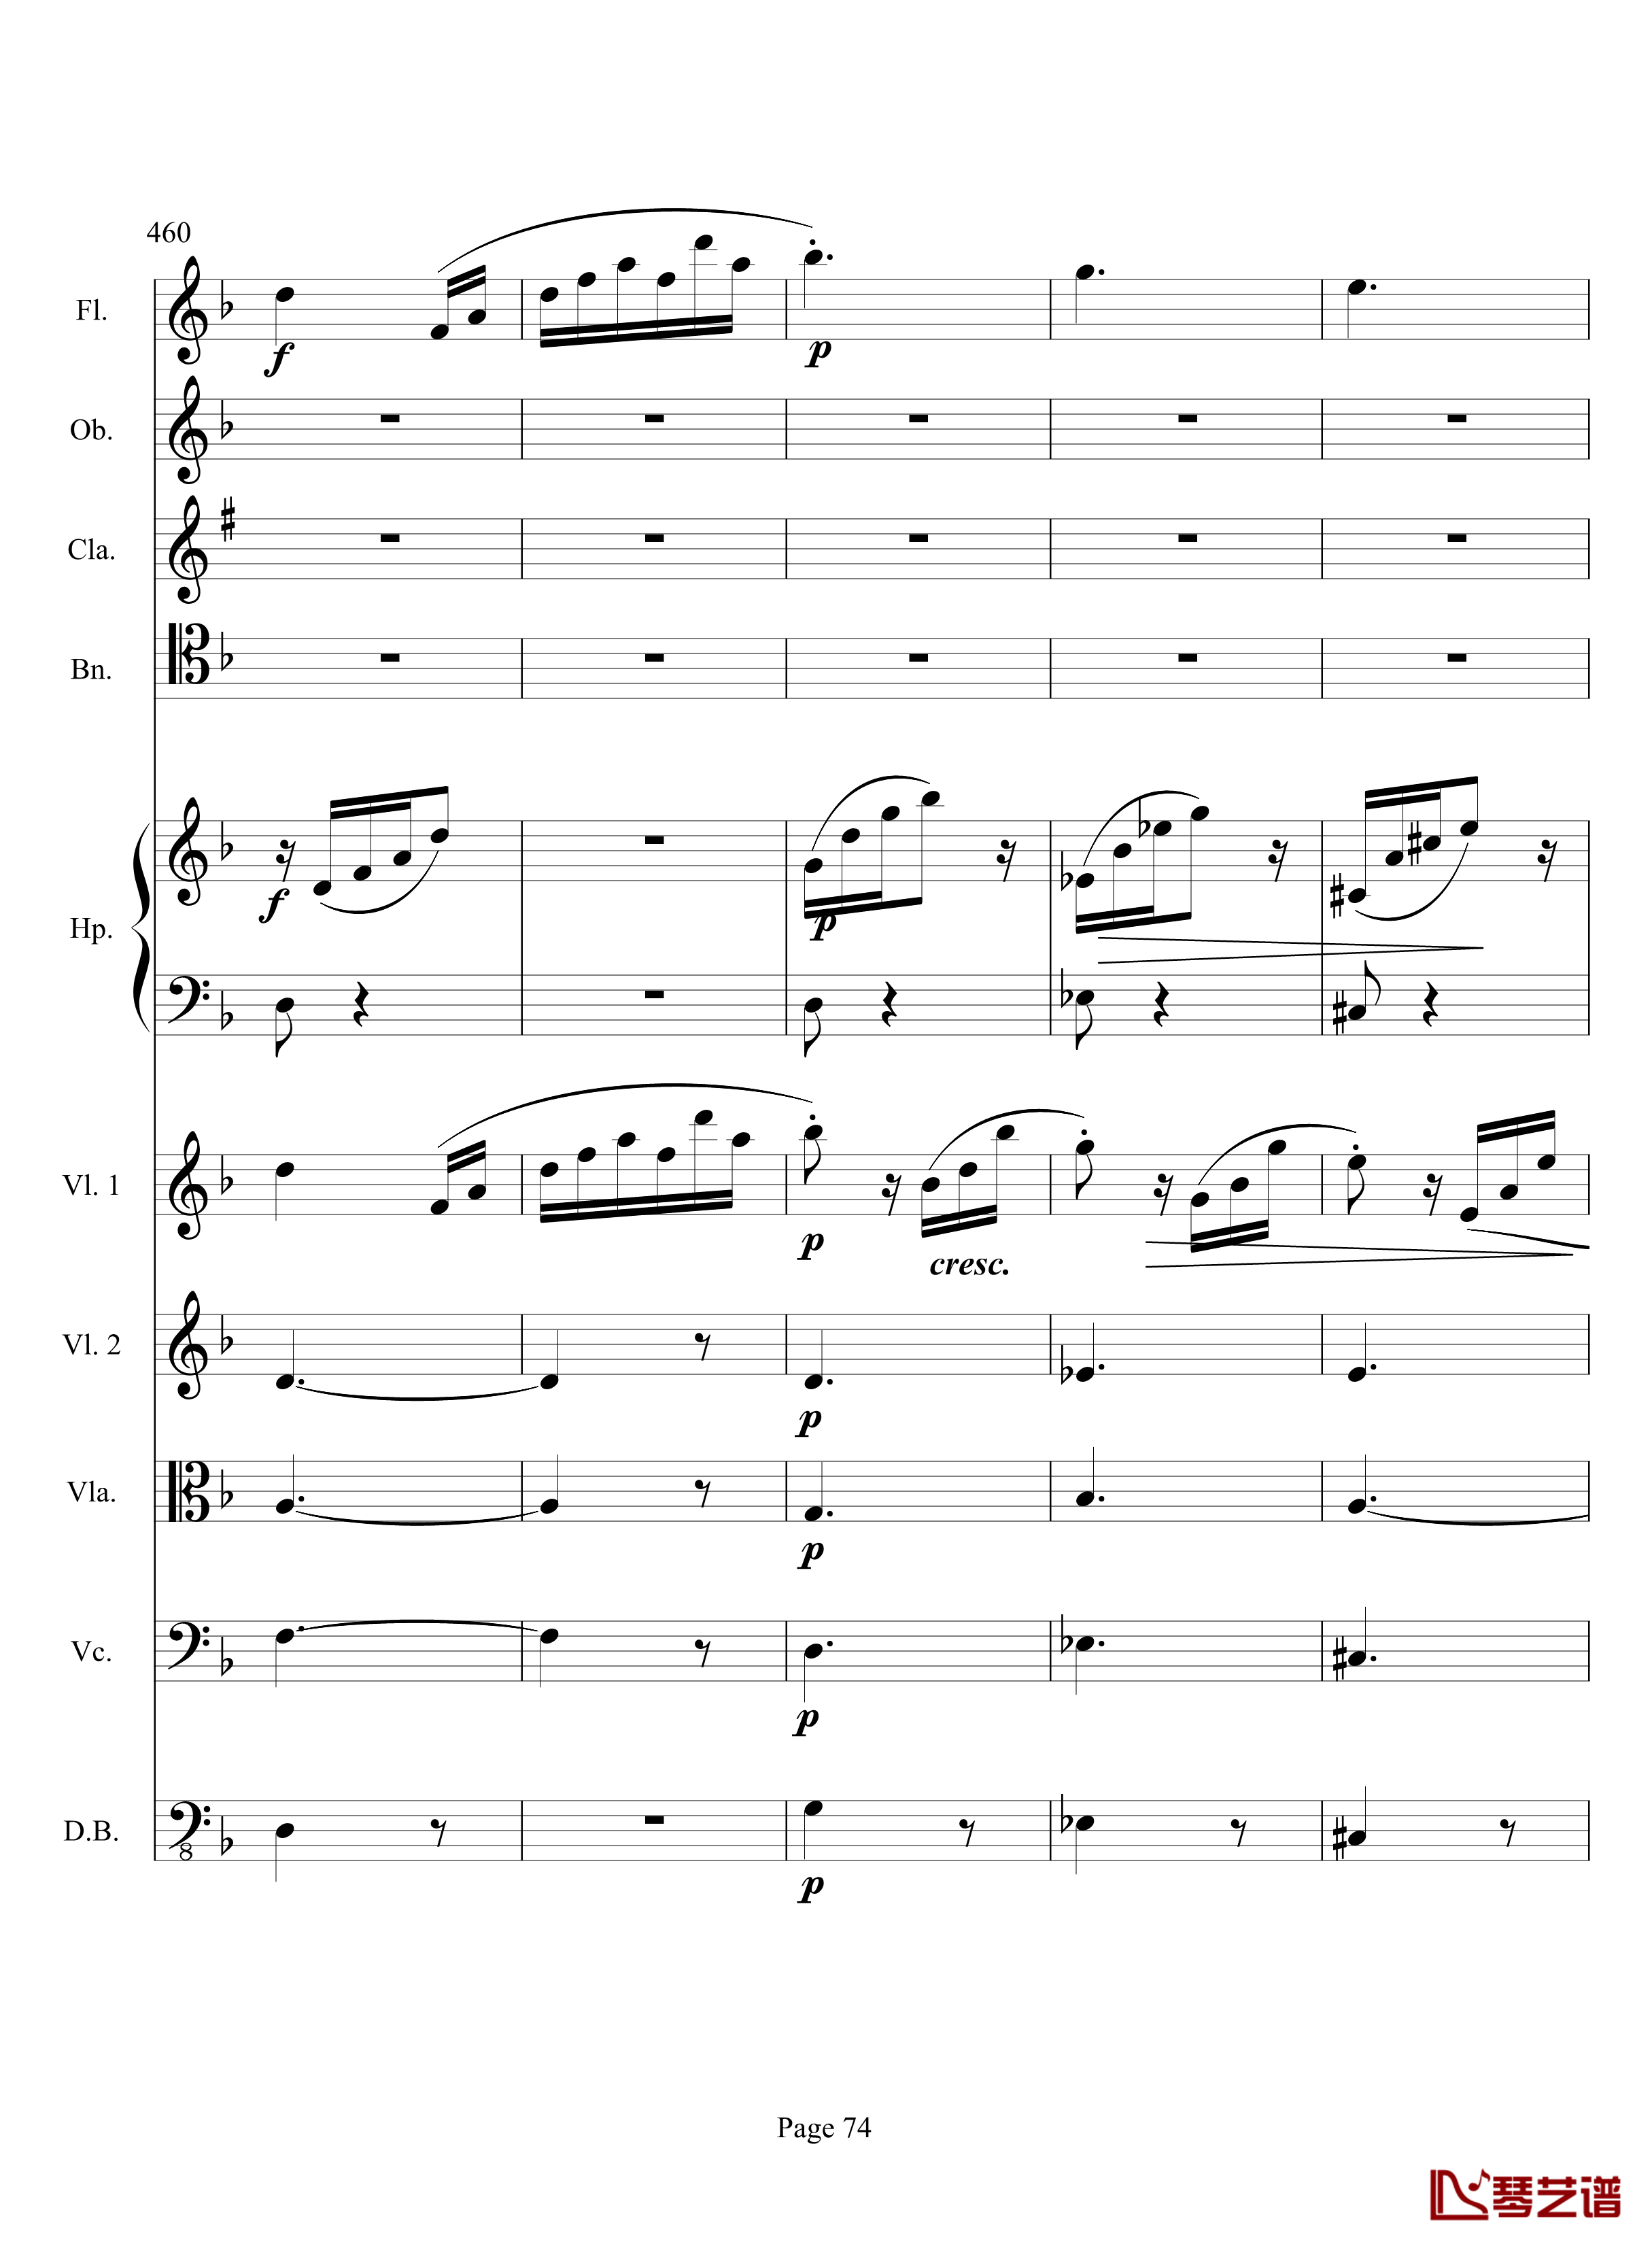 奏鸣曲之交响钢琴谱-第17首-Ⅲ-贝多芬-beethoven74